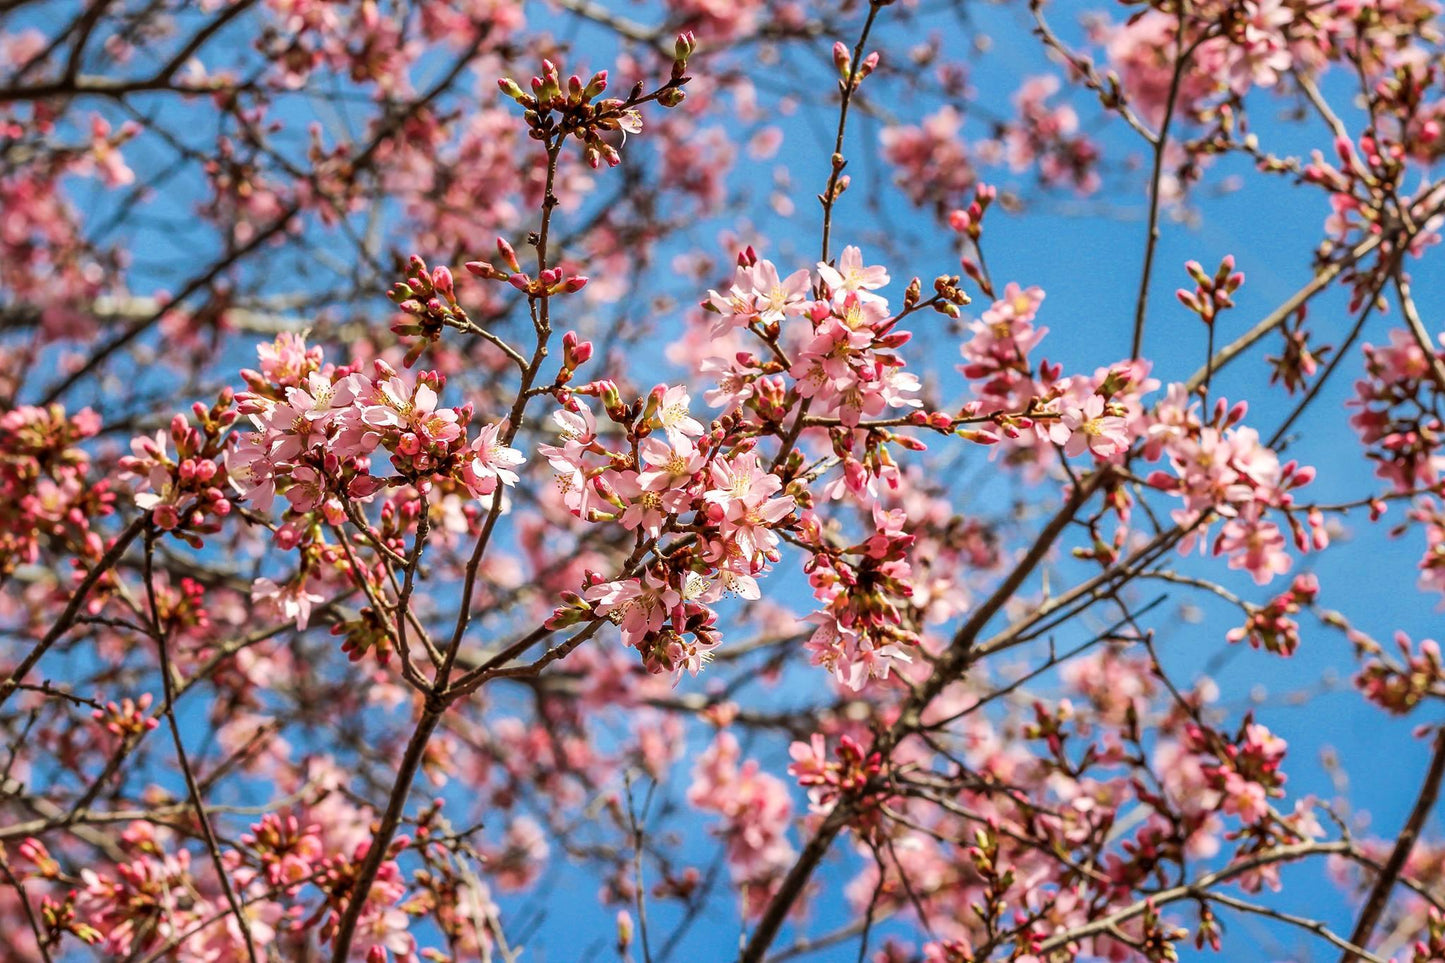 Pink Cherry Blossoms | Floral Print - Departures Print Shop